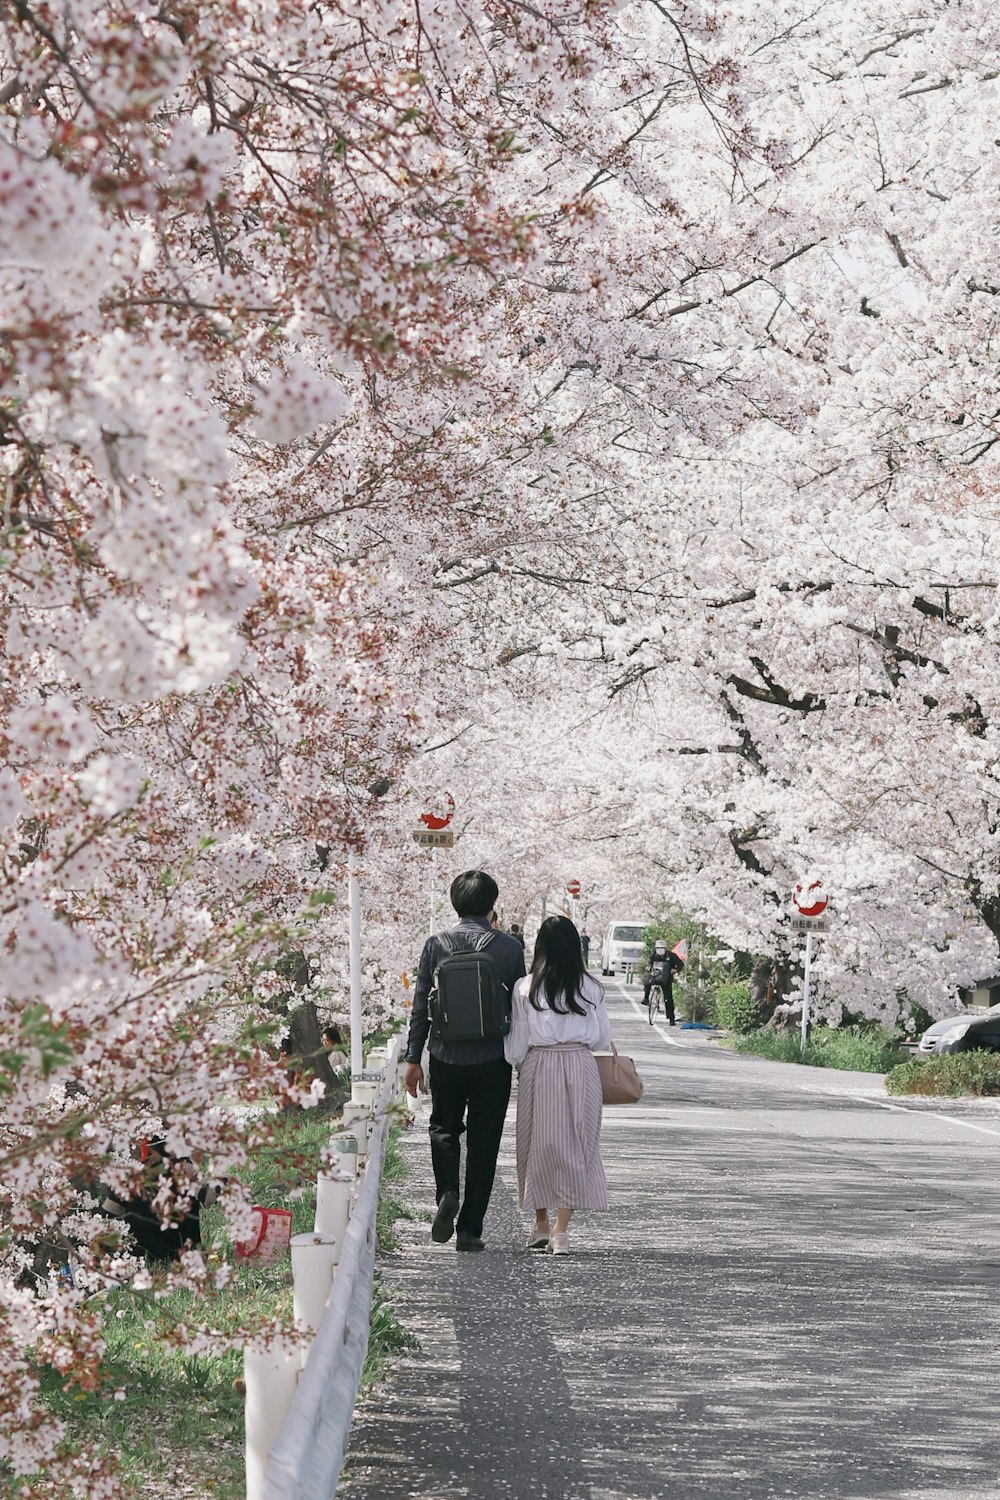 hombre y mujer caminando por el camino entre los cerezos en flor durante el día